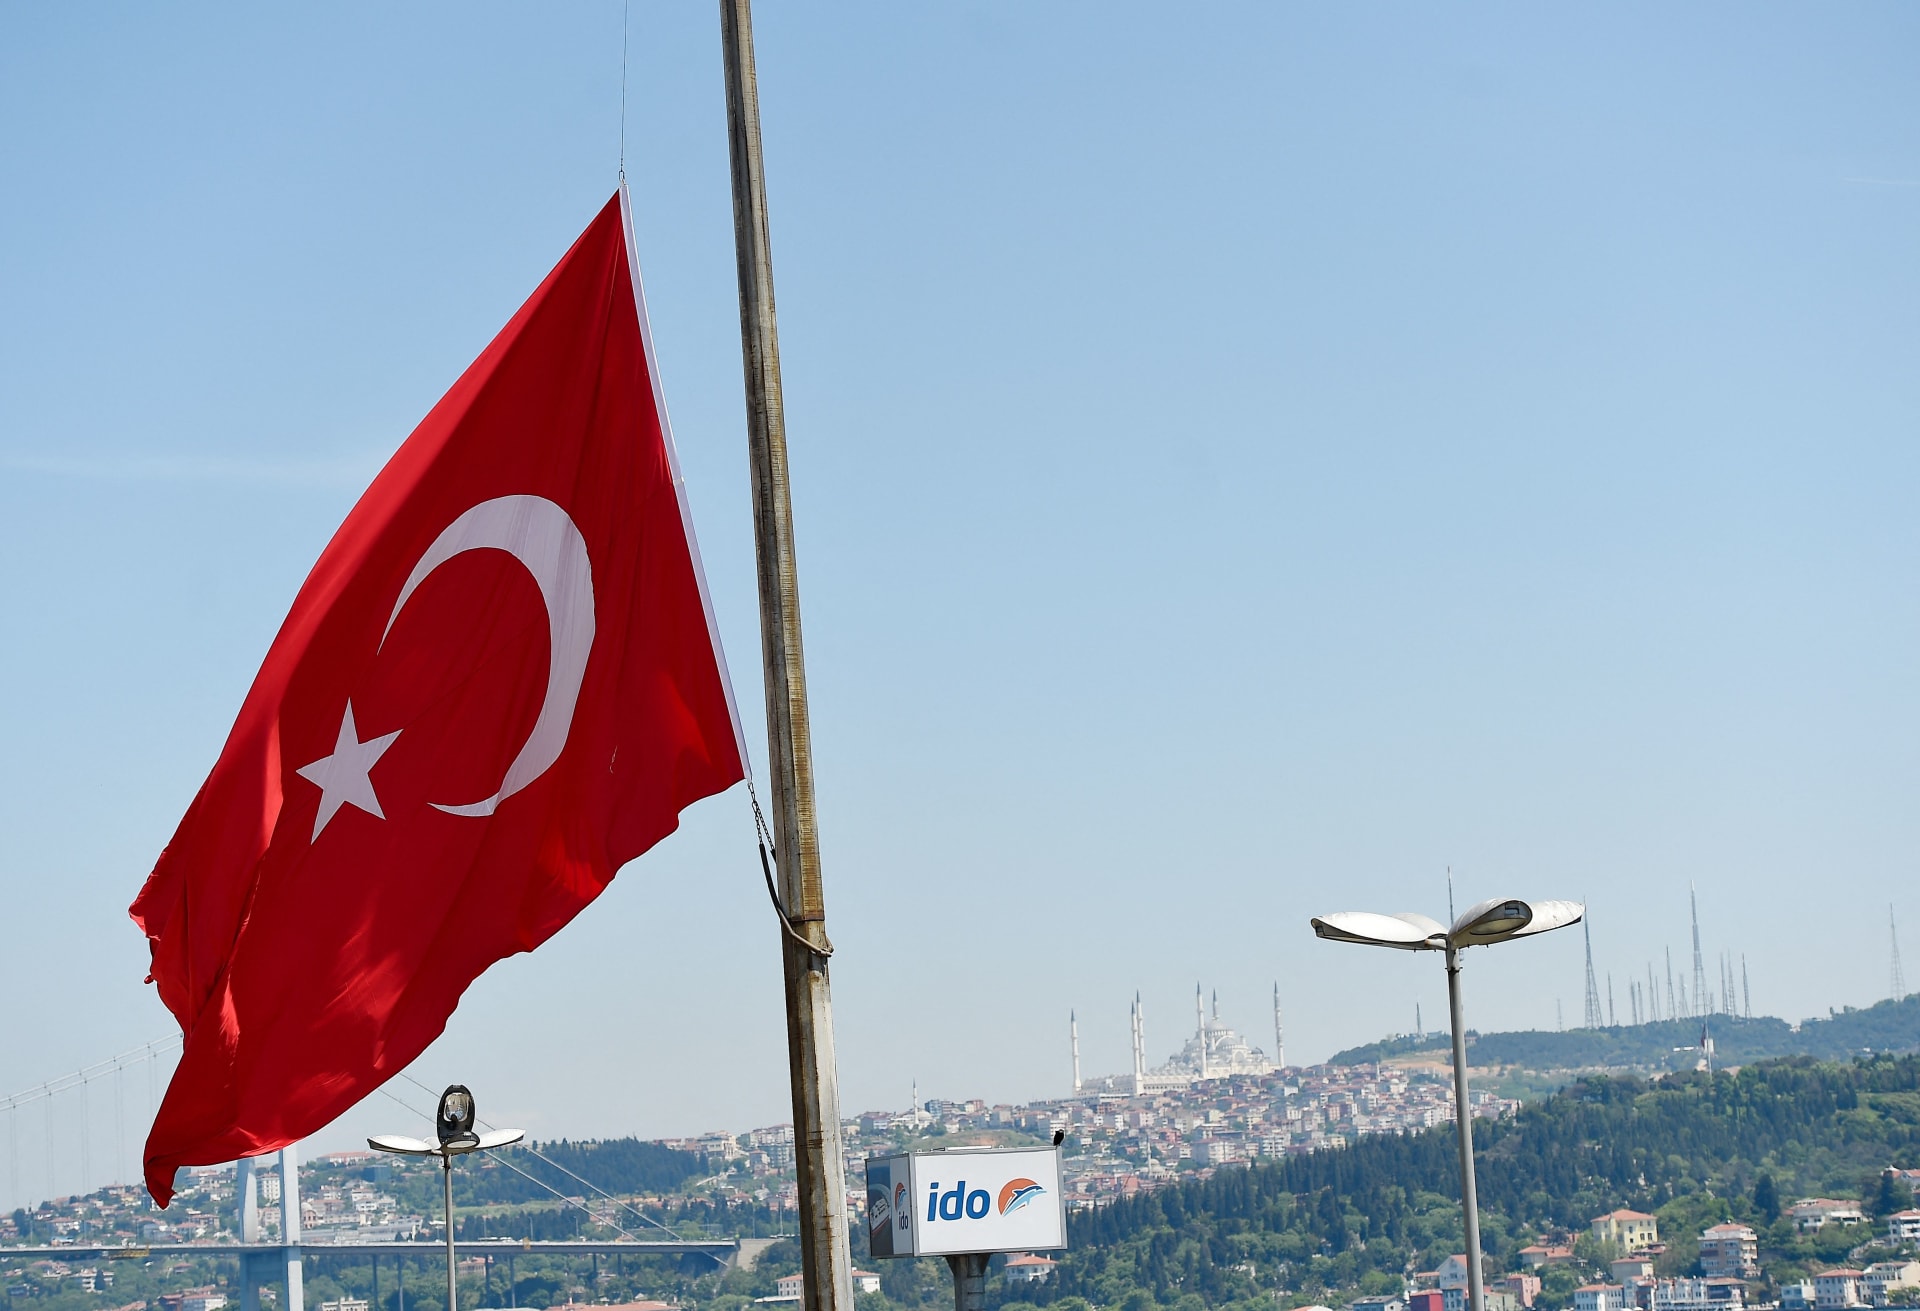 خارجية تركيا تندد باعتداء استهدف نسخة من المصحف وعلمها في الدنمارك